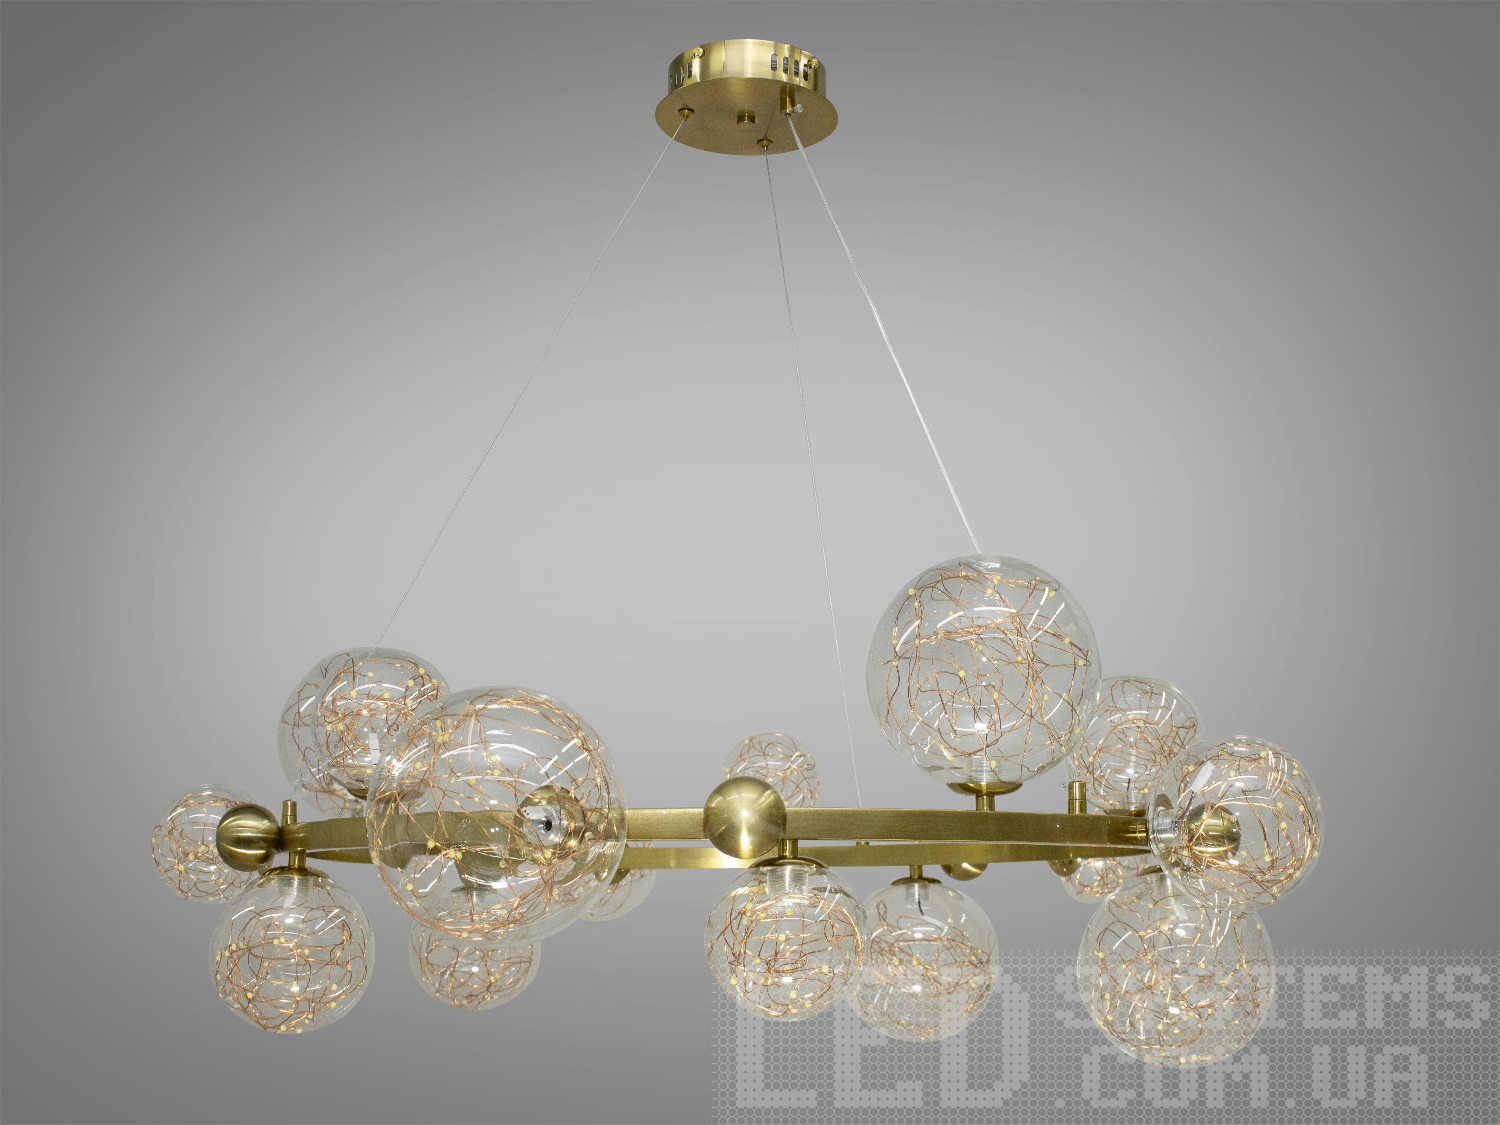 Мінімалістична люстра в стилі Loft - Bubbles на 15 плафонів має дуже стильний дизайн, підійде для невеликого залу, вітальні, кухні, спальні, їдальні.
Люстра 